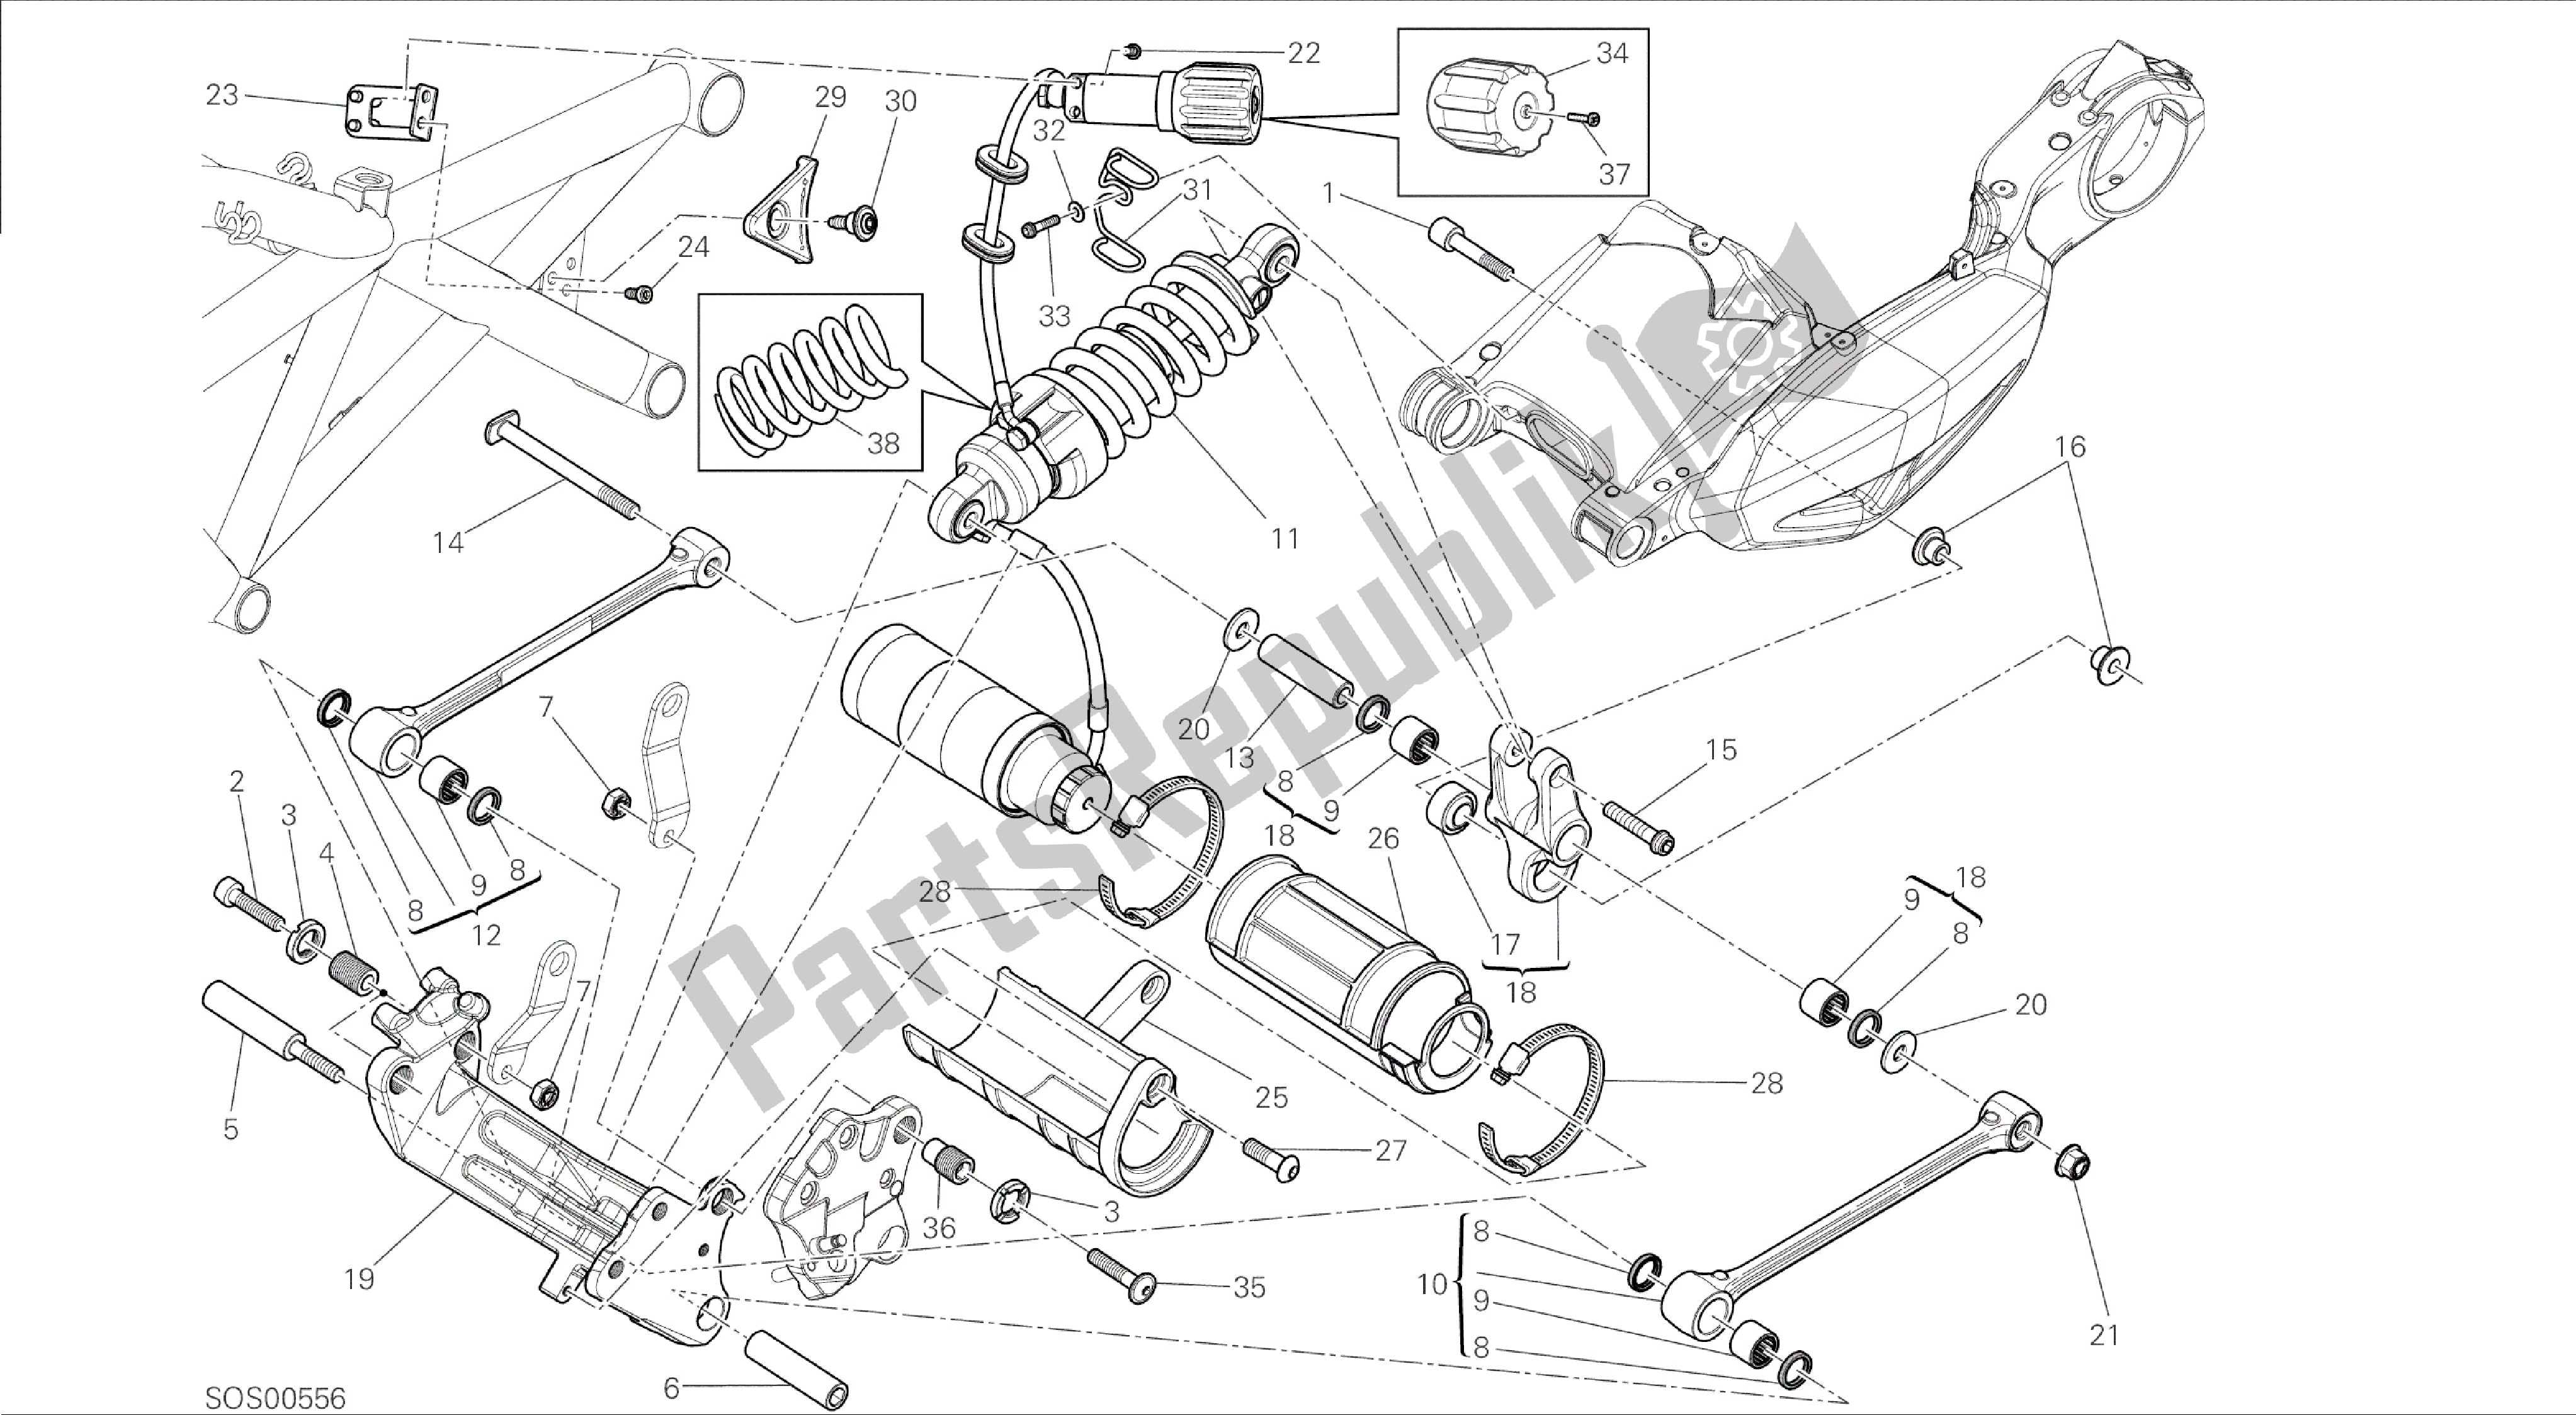 Todas las partes para Dibujo 028 - Bastidor Del Grupo Amortiguador Trasero [mod: Dvl] de Ducati Diavel 1200 2015